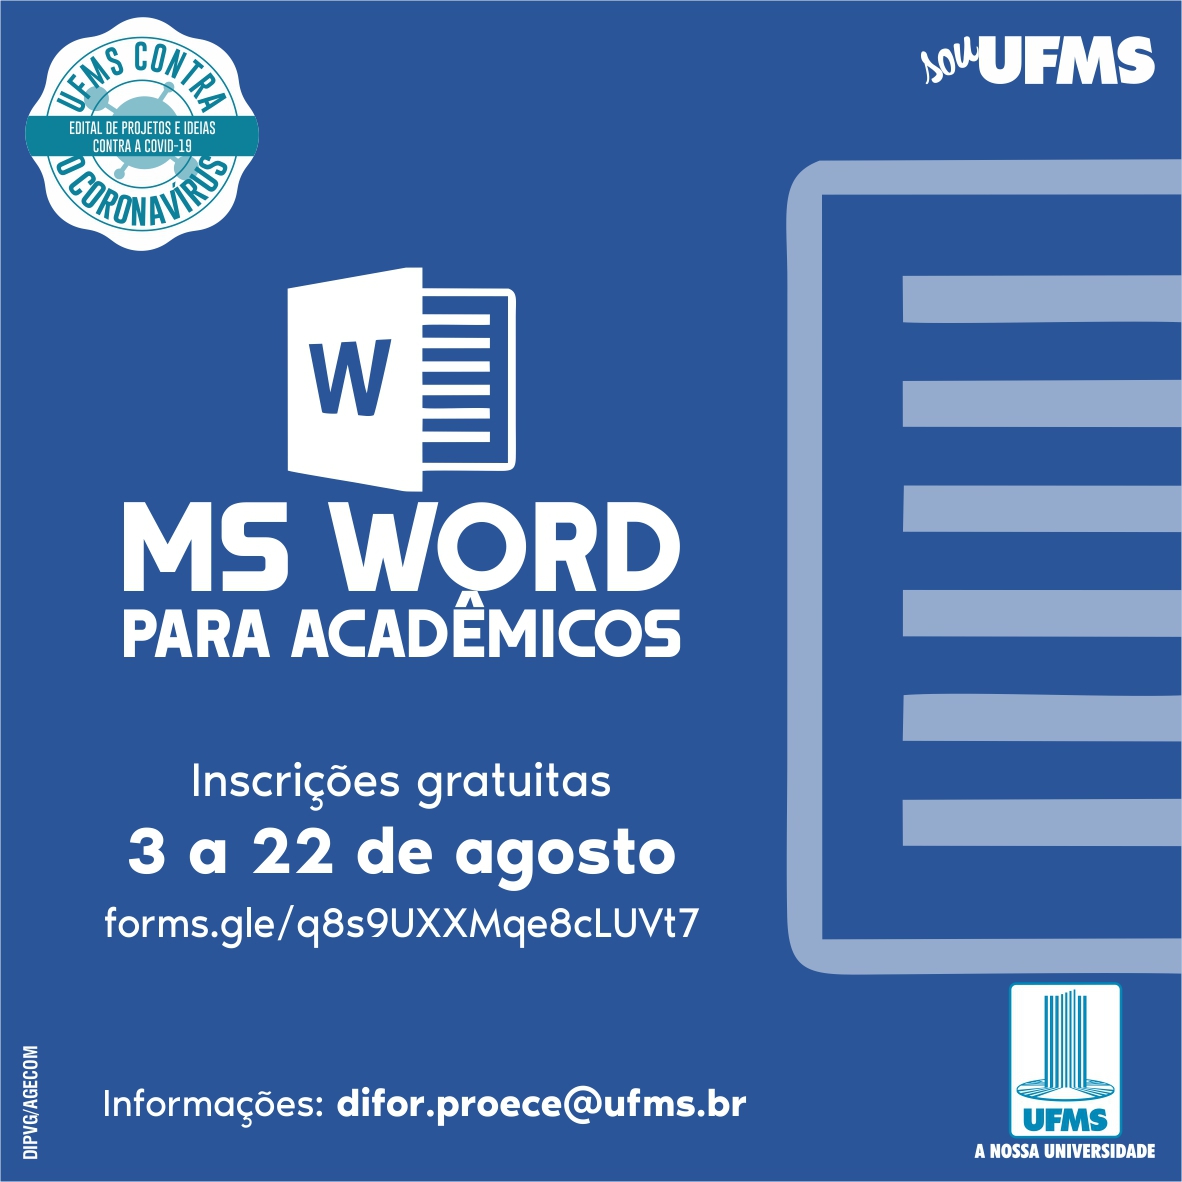 Curso Word Gratis Pdf Curso gratuito auxilia estudantes a formatar trabalhos acadêmicos - UFMS